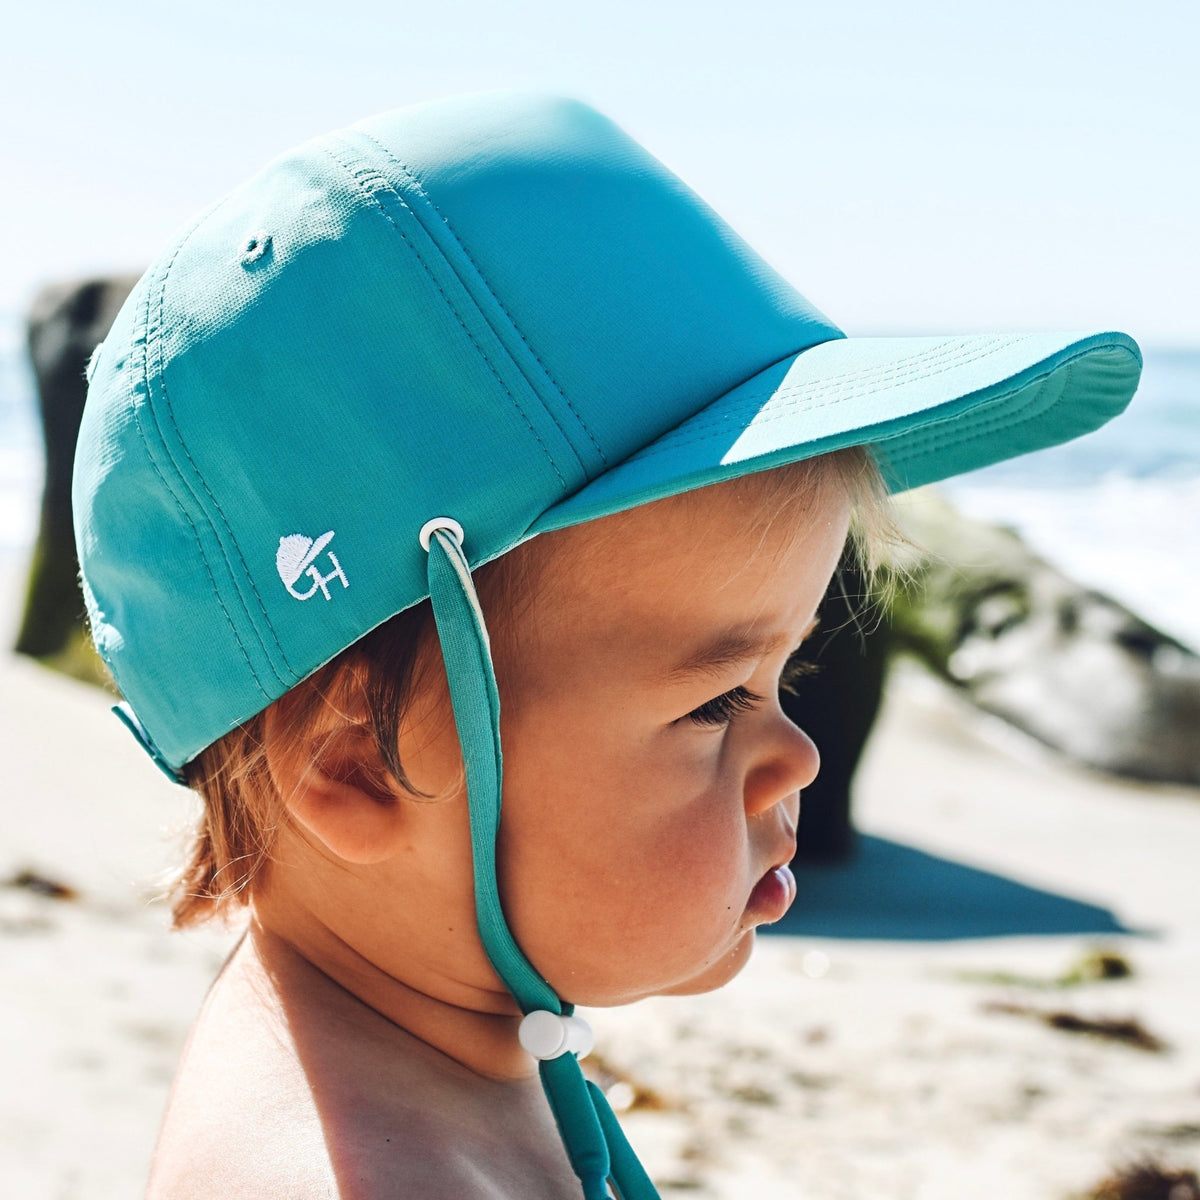 Neon Green Surf Hat, Stay on waterproof Kids hats